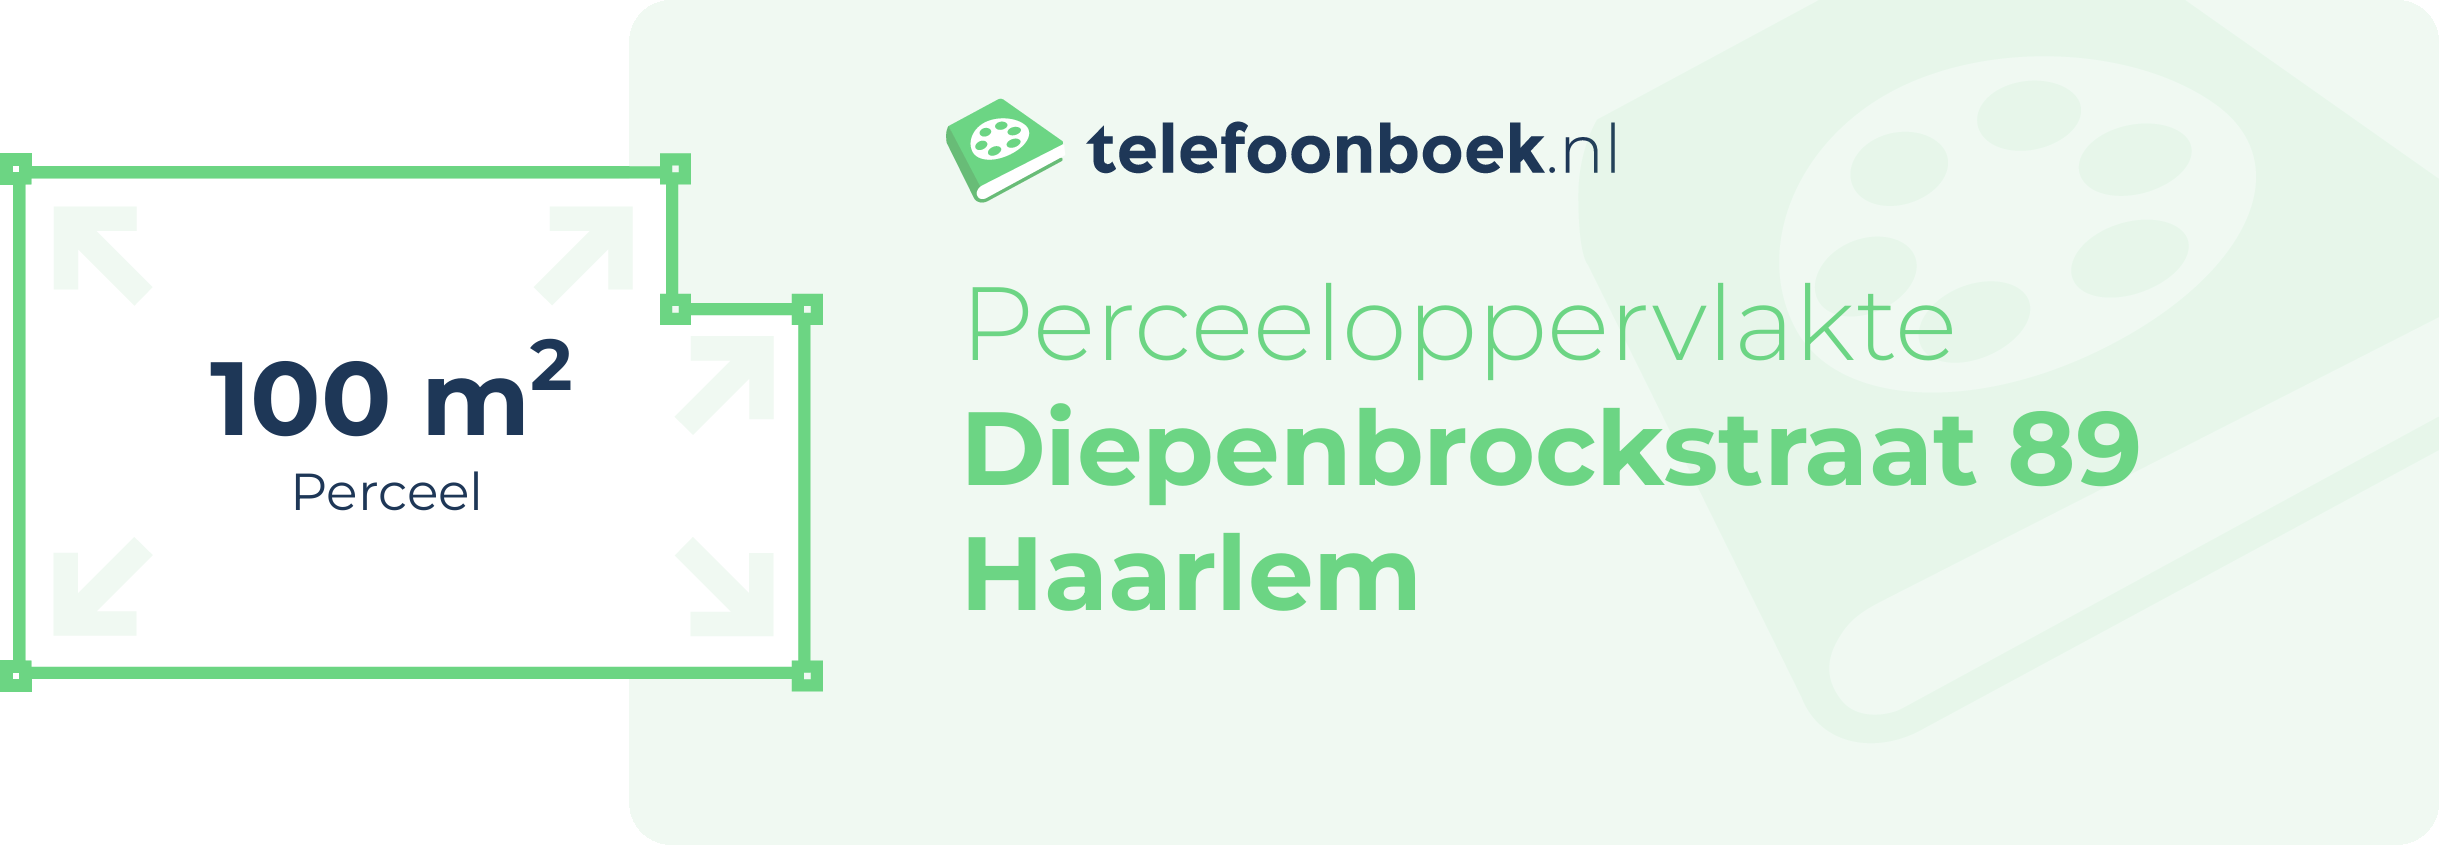 Perceeloppervlakte Diepenbrockstraat 89 Haarlem